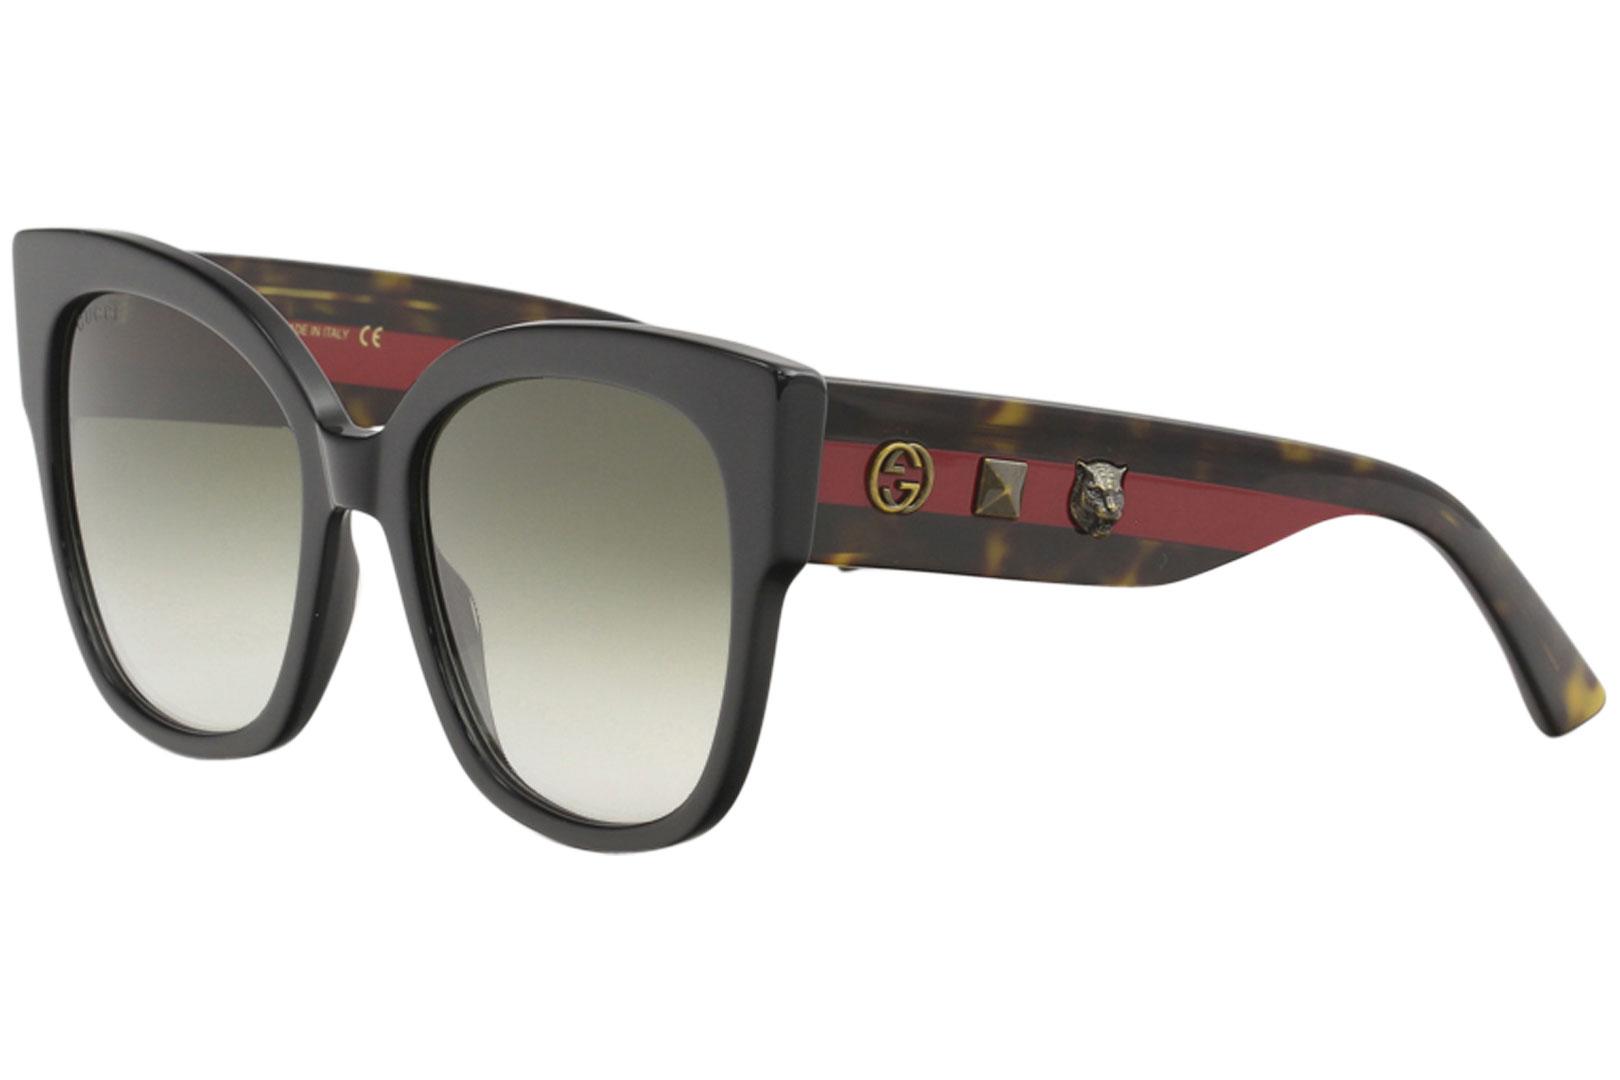 Gucci Women's GG0059S GG/0059/S Fashion Square Sunglasses - Black Havana Red/Green Gradient   001 - Lens 55 Bridge 19 Temple 140mm